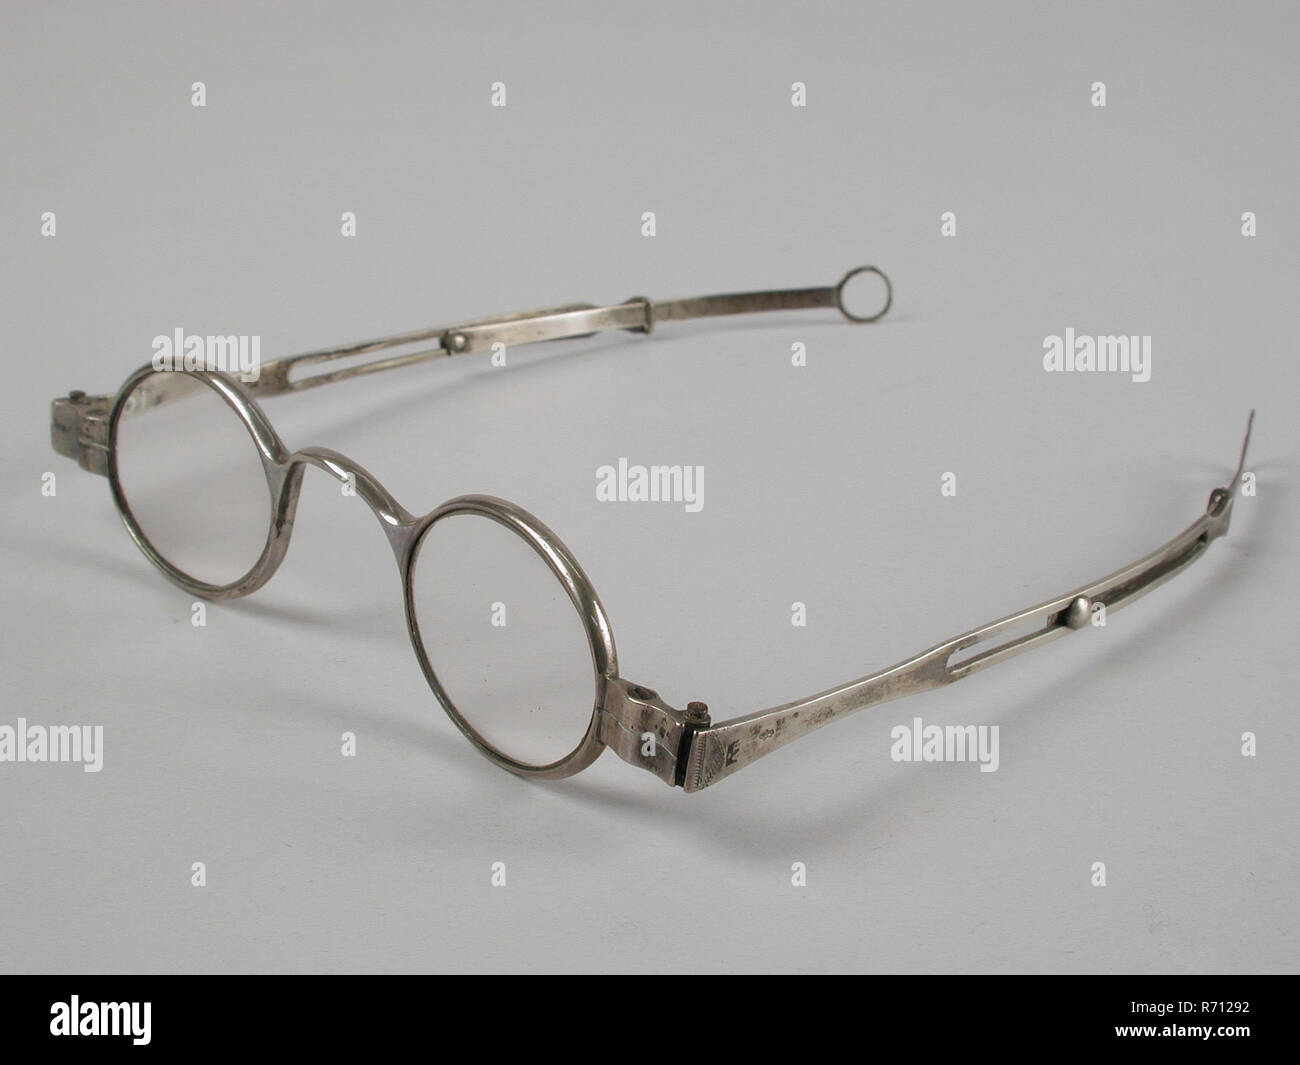 Gafas con lentes ovalados en la fuerza, Marco plateado y plumas, espectáculo lente ojo de vidrio equipos metal plateado, gafas con ovalados en la fuerza. El bastidor el